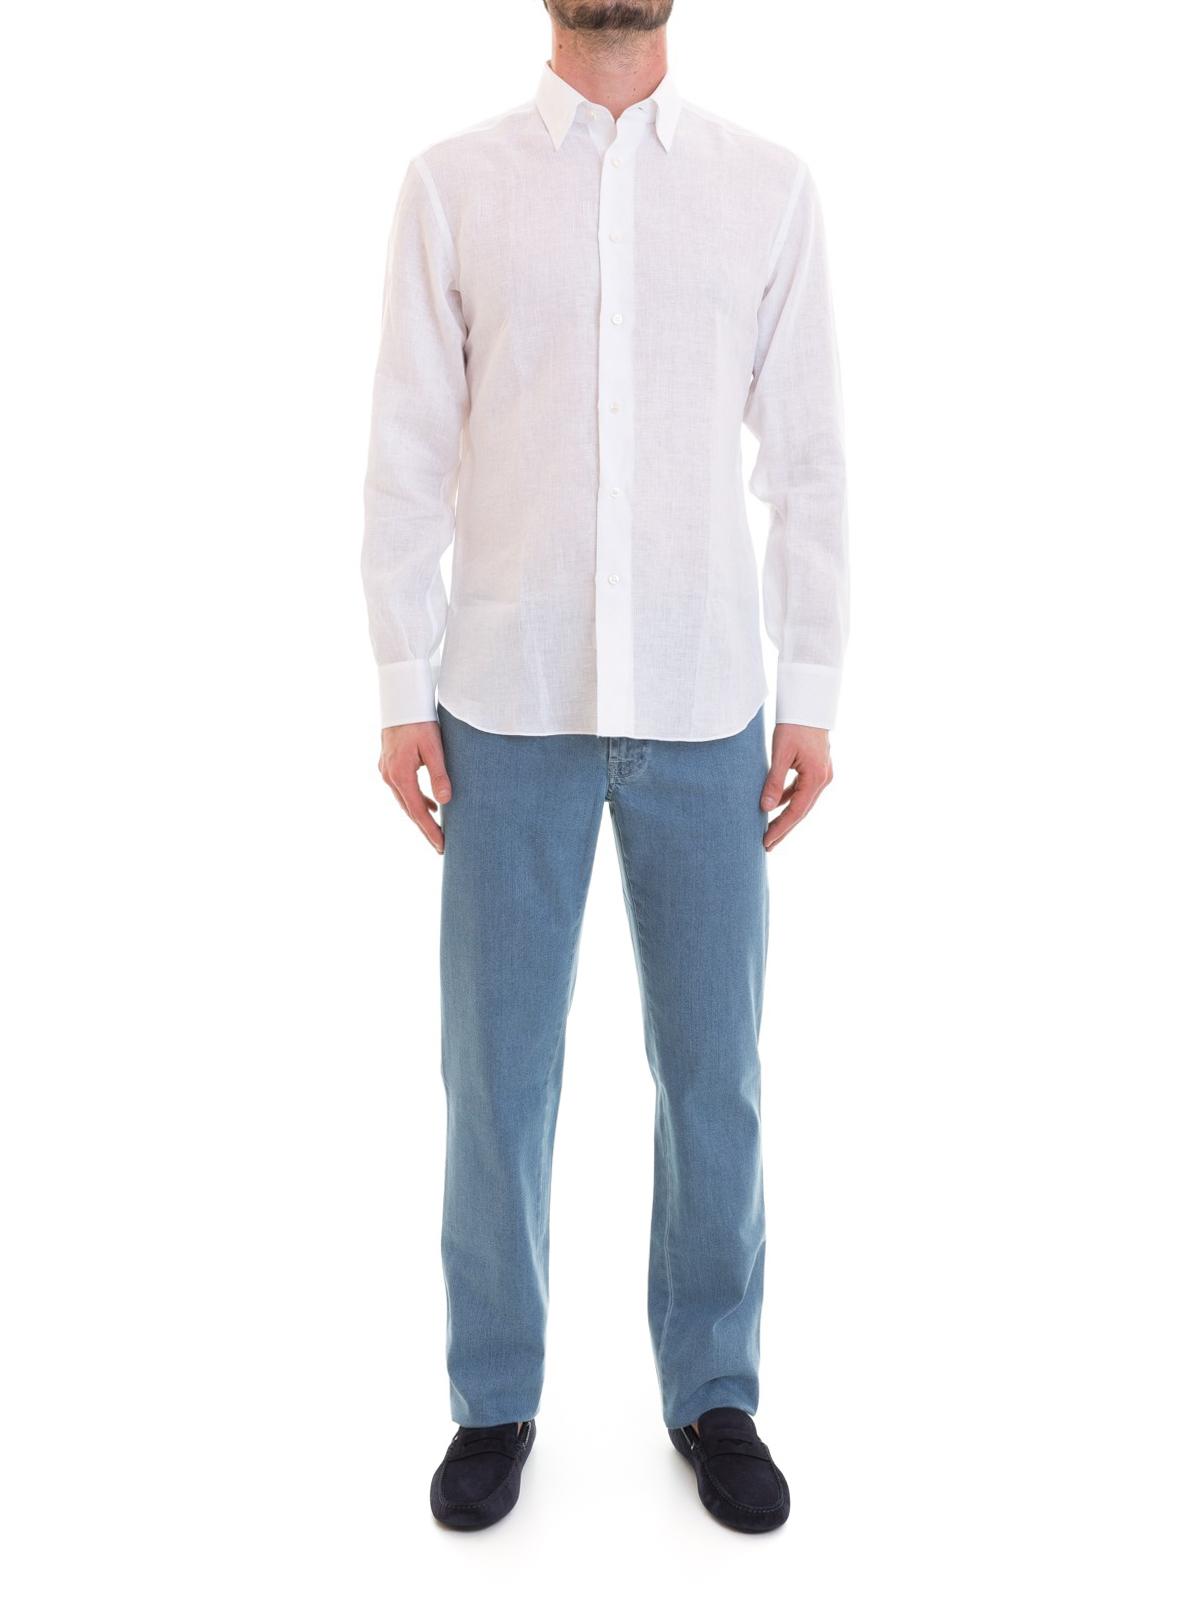 Brioni Long Sleeved White Linen Shirt for Men - Lyst